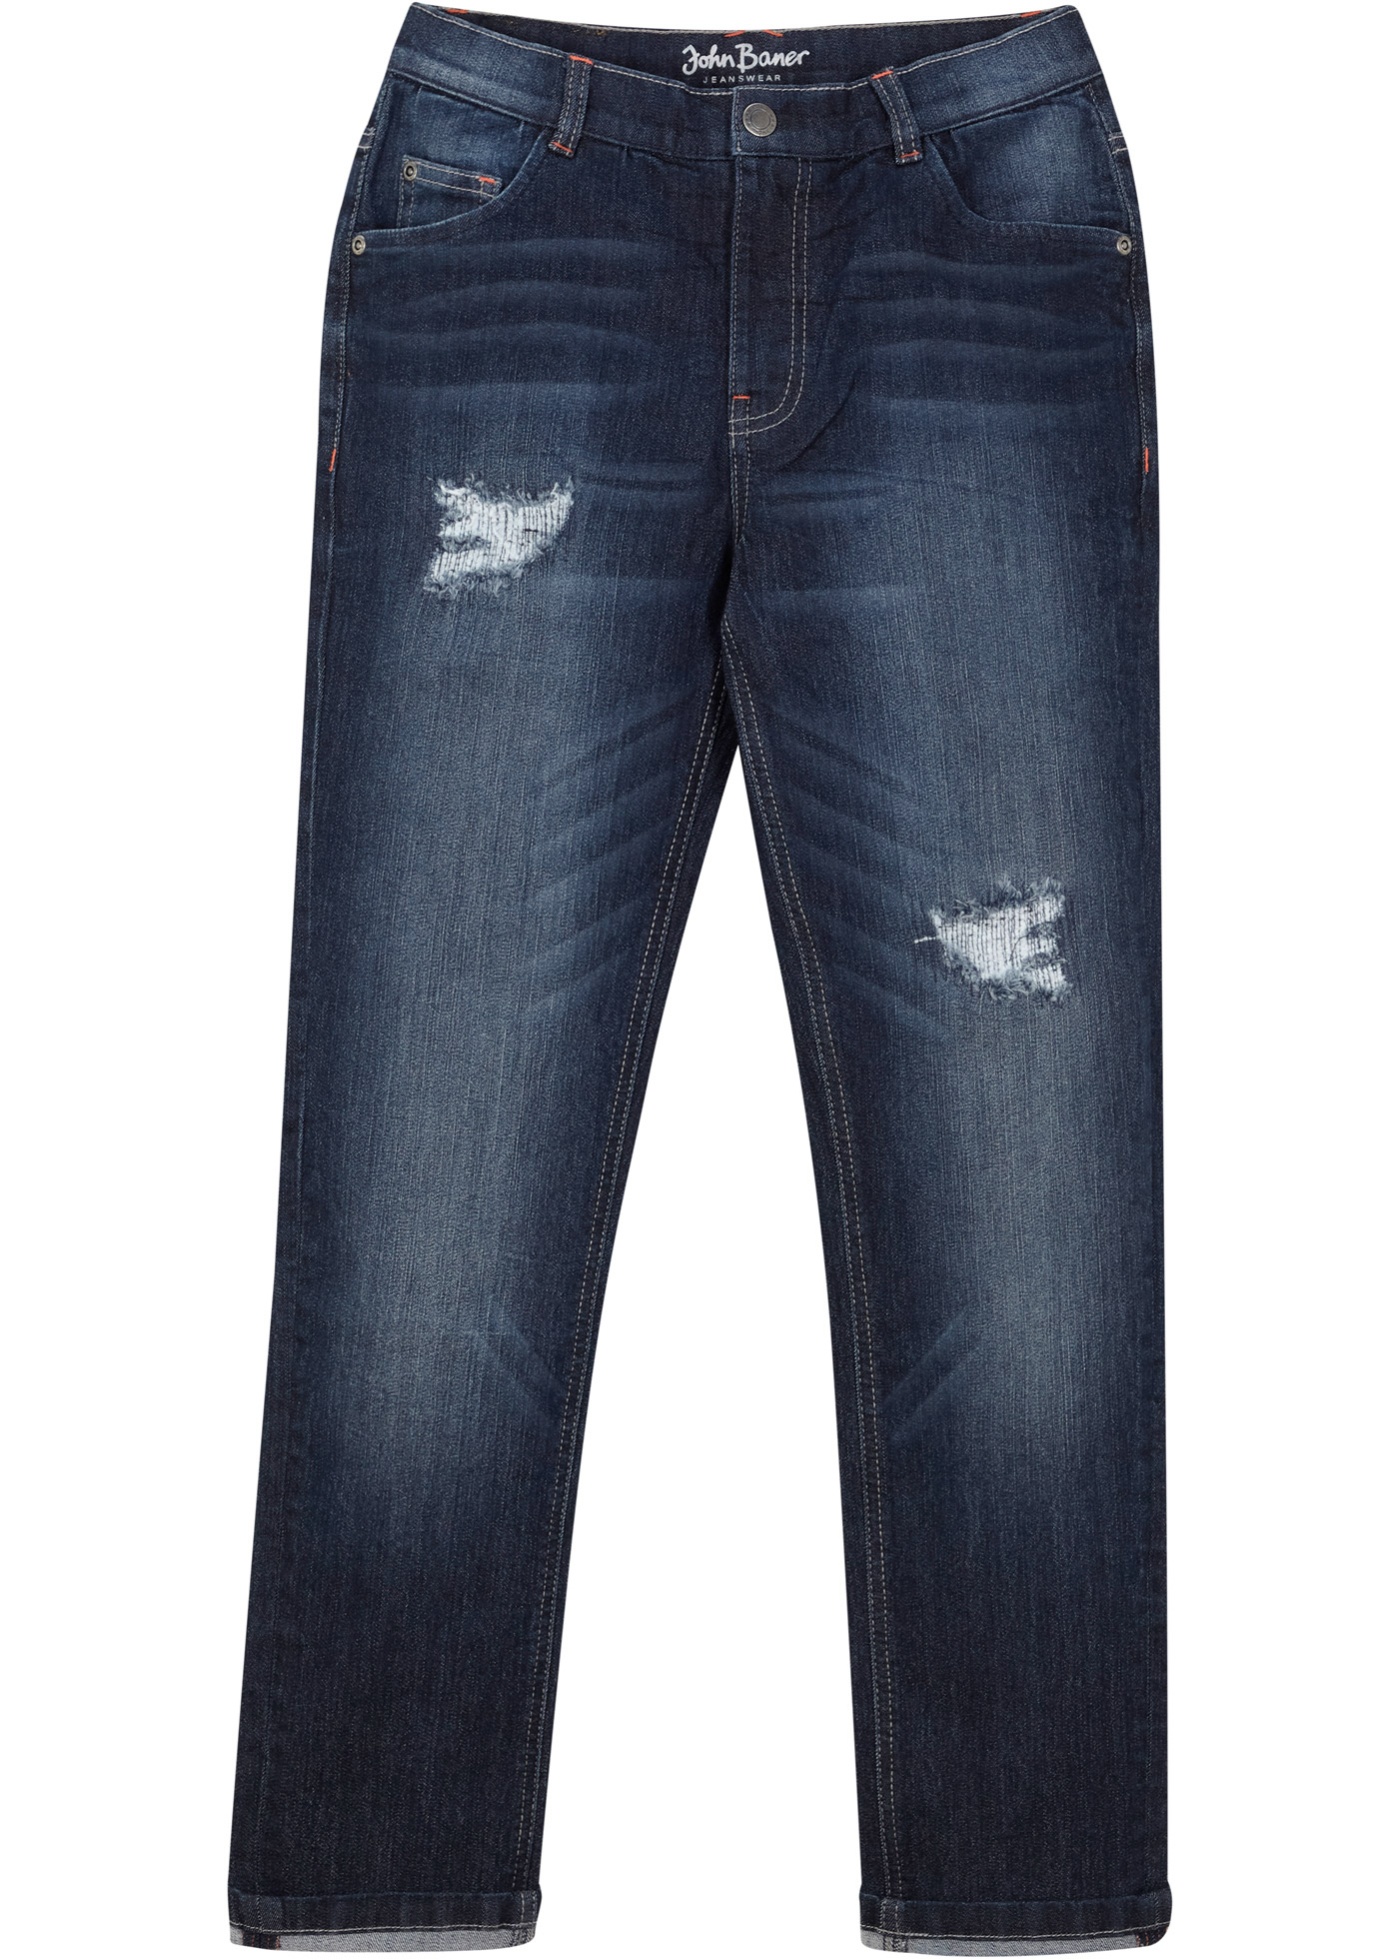 Chlapčenské džínsy so zničenými detailmi, Slim Fit